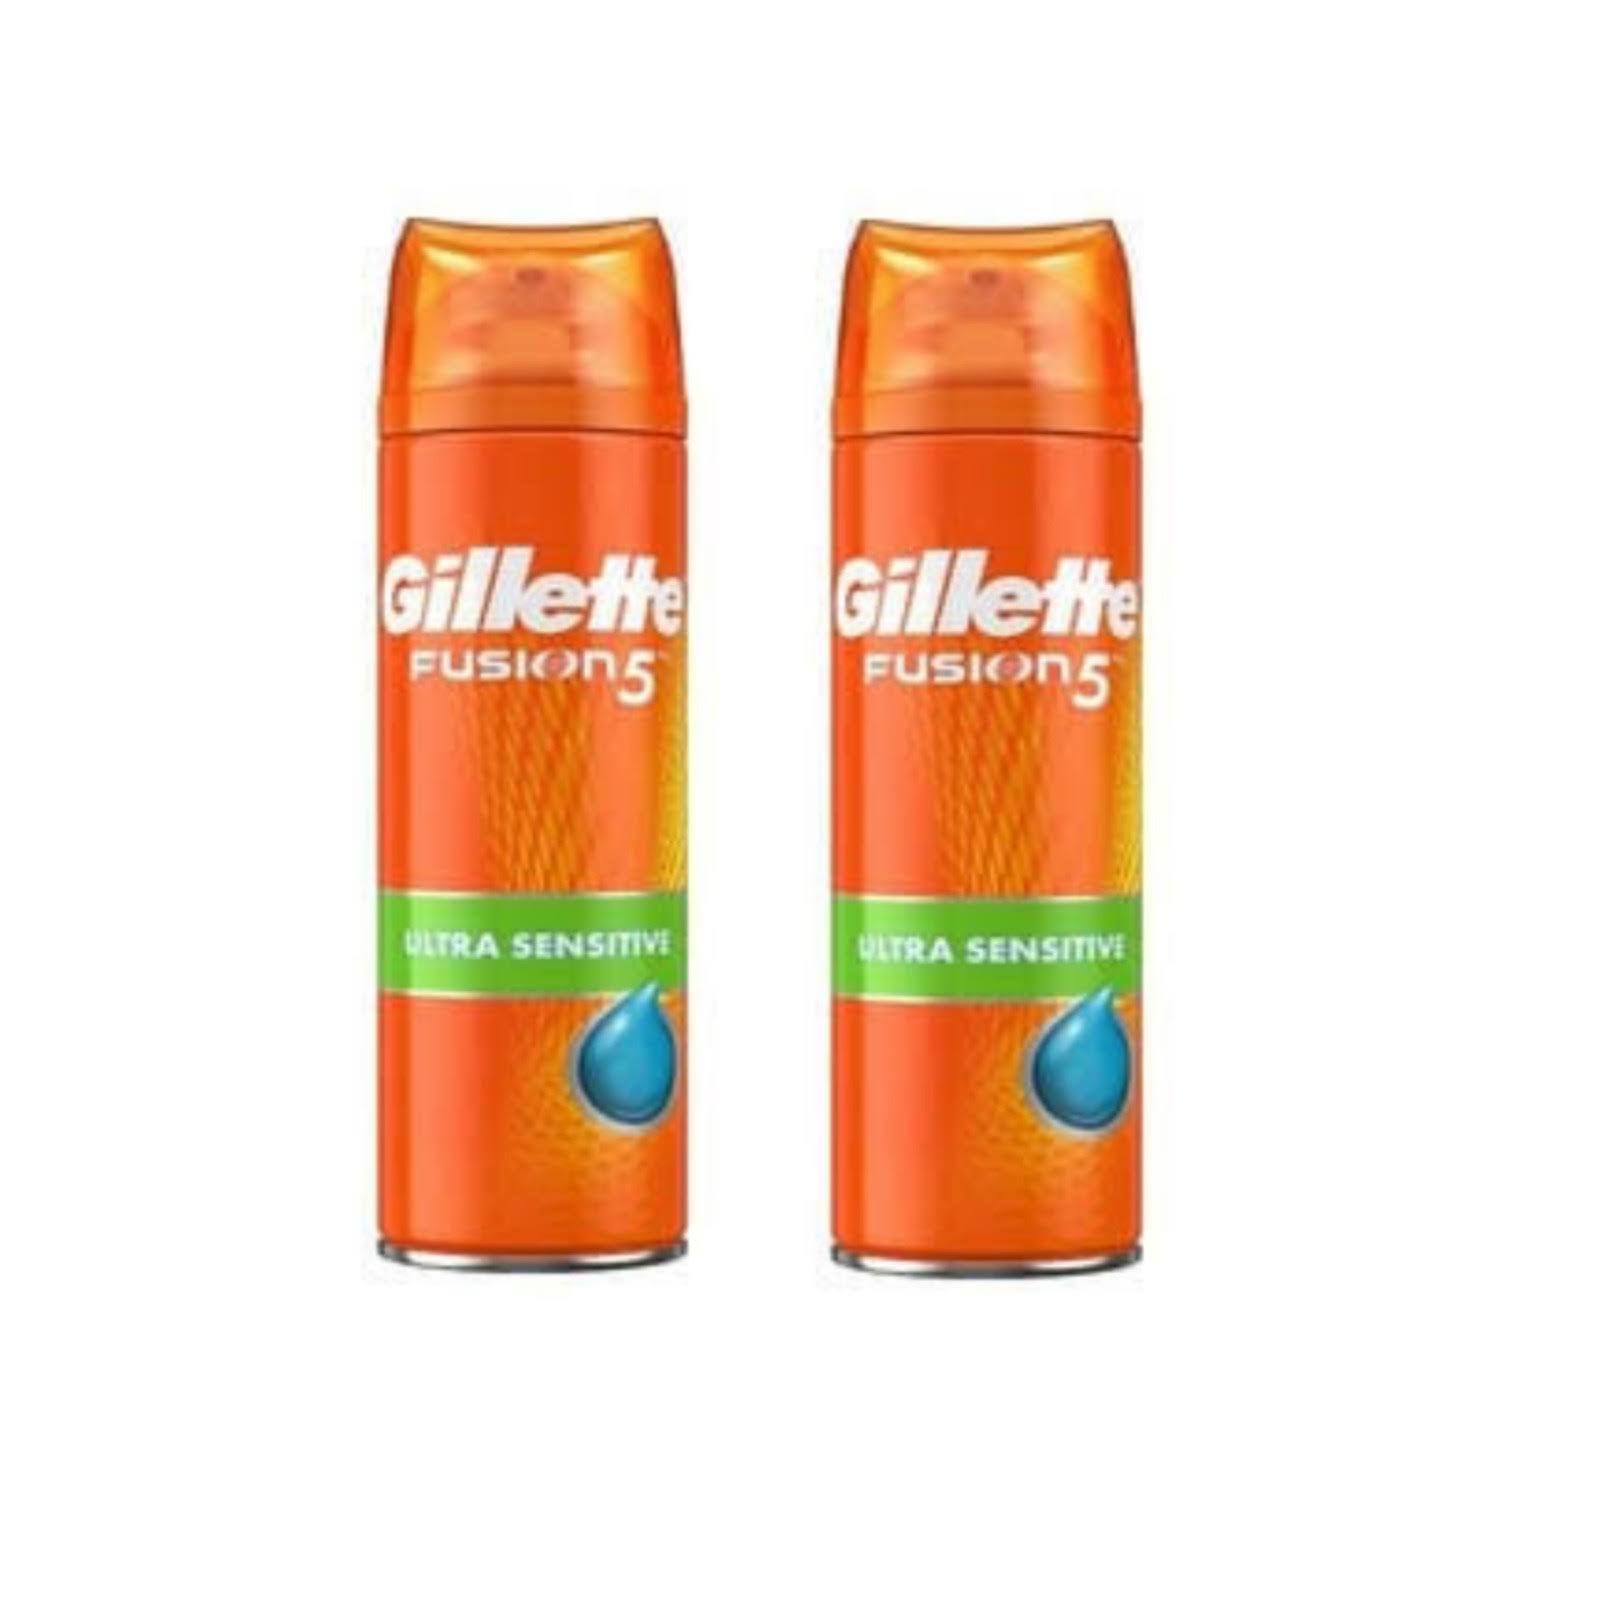 Gillette Mens Fushion 5 Shaving Gel - Ultra Sensitive, 200ml